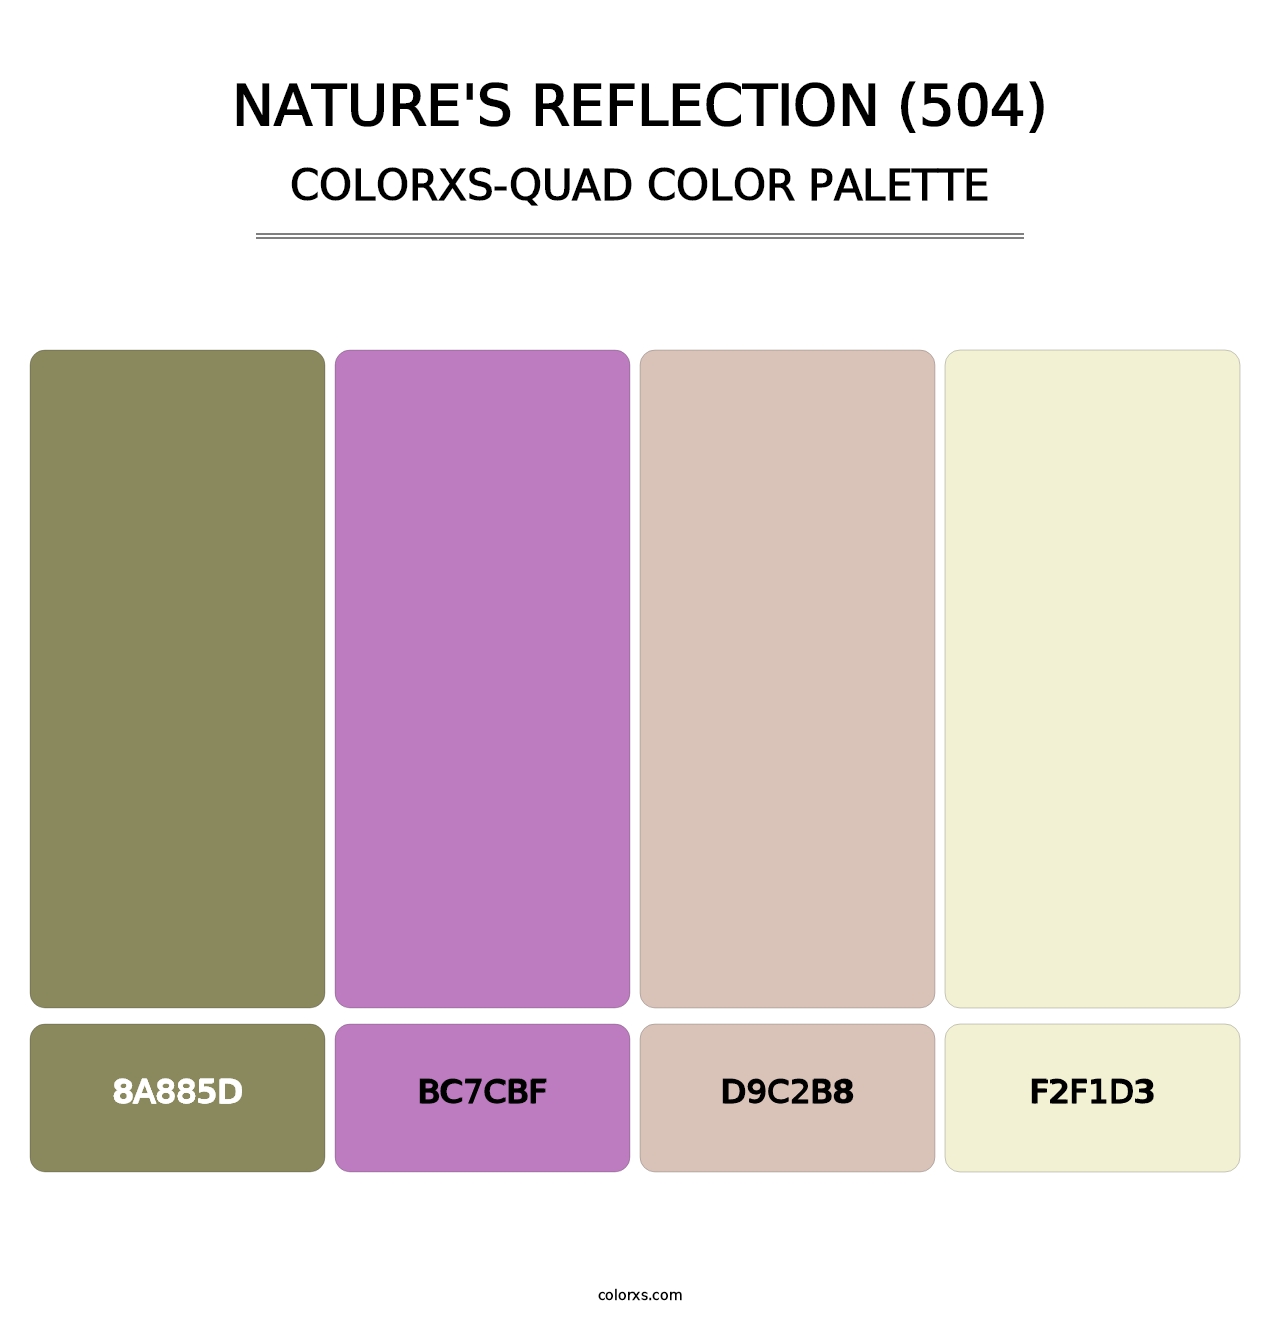 Nature's Reflection (504) - Colorxs Quad Palette